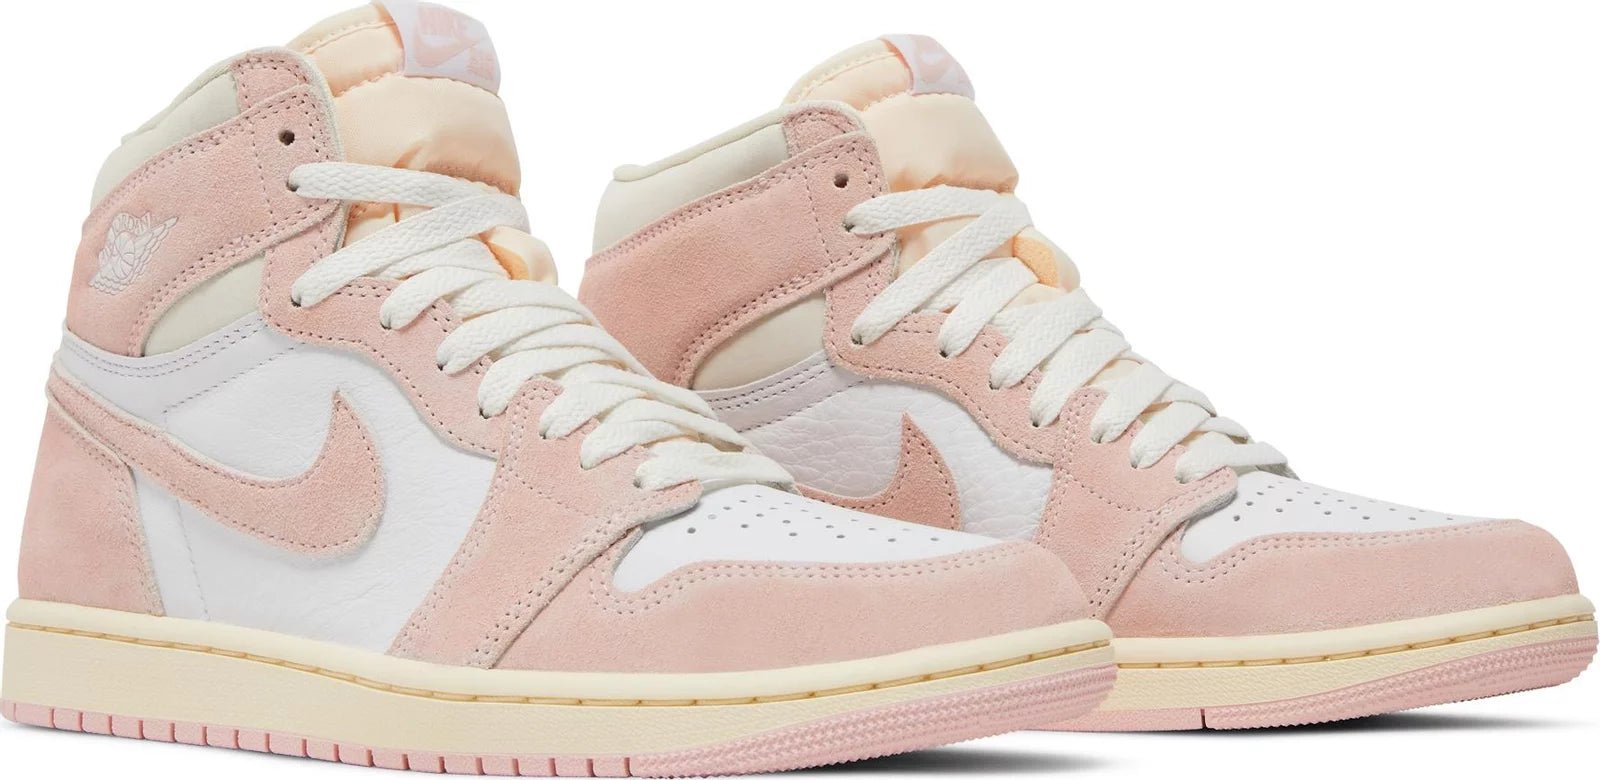 Air Jordan 1 Retro High OG Washed Pink (W) - Paroissesaintefoy Sneakers Sale Online